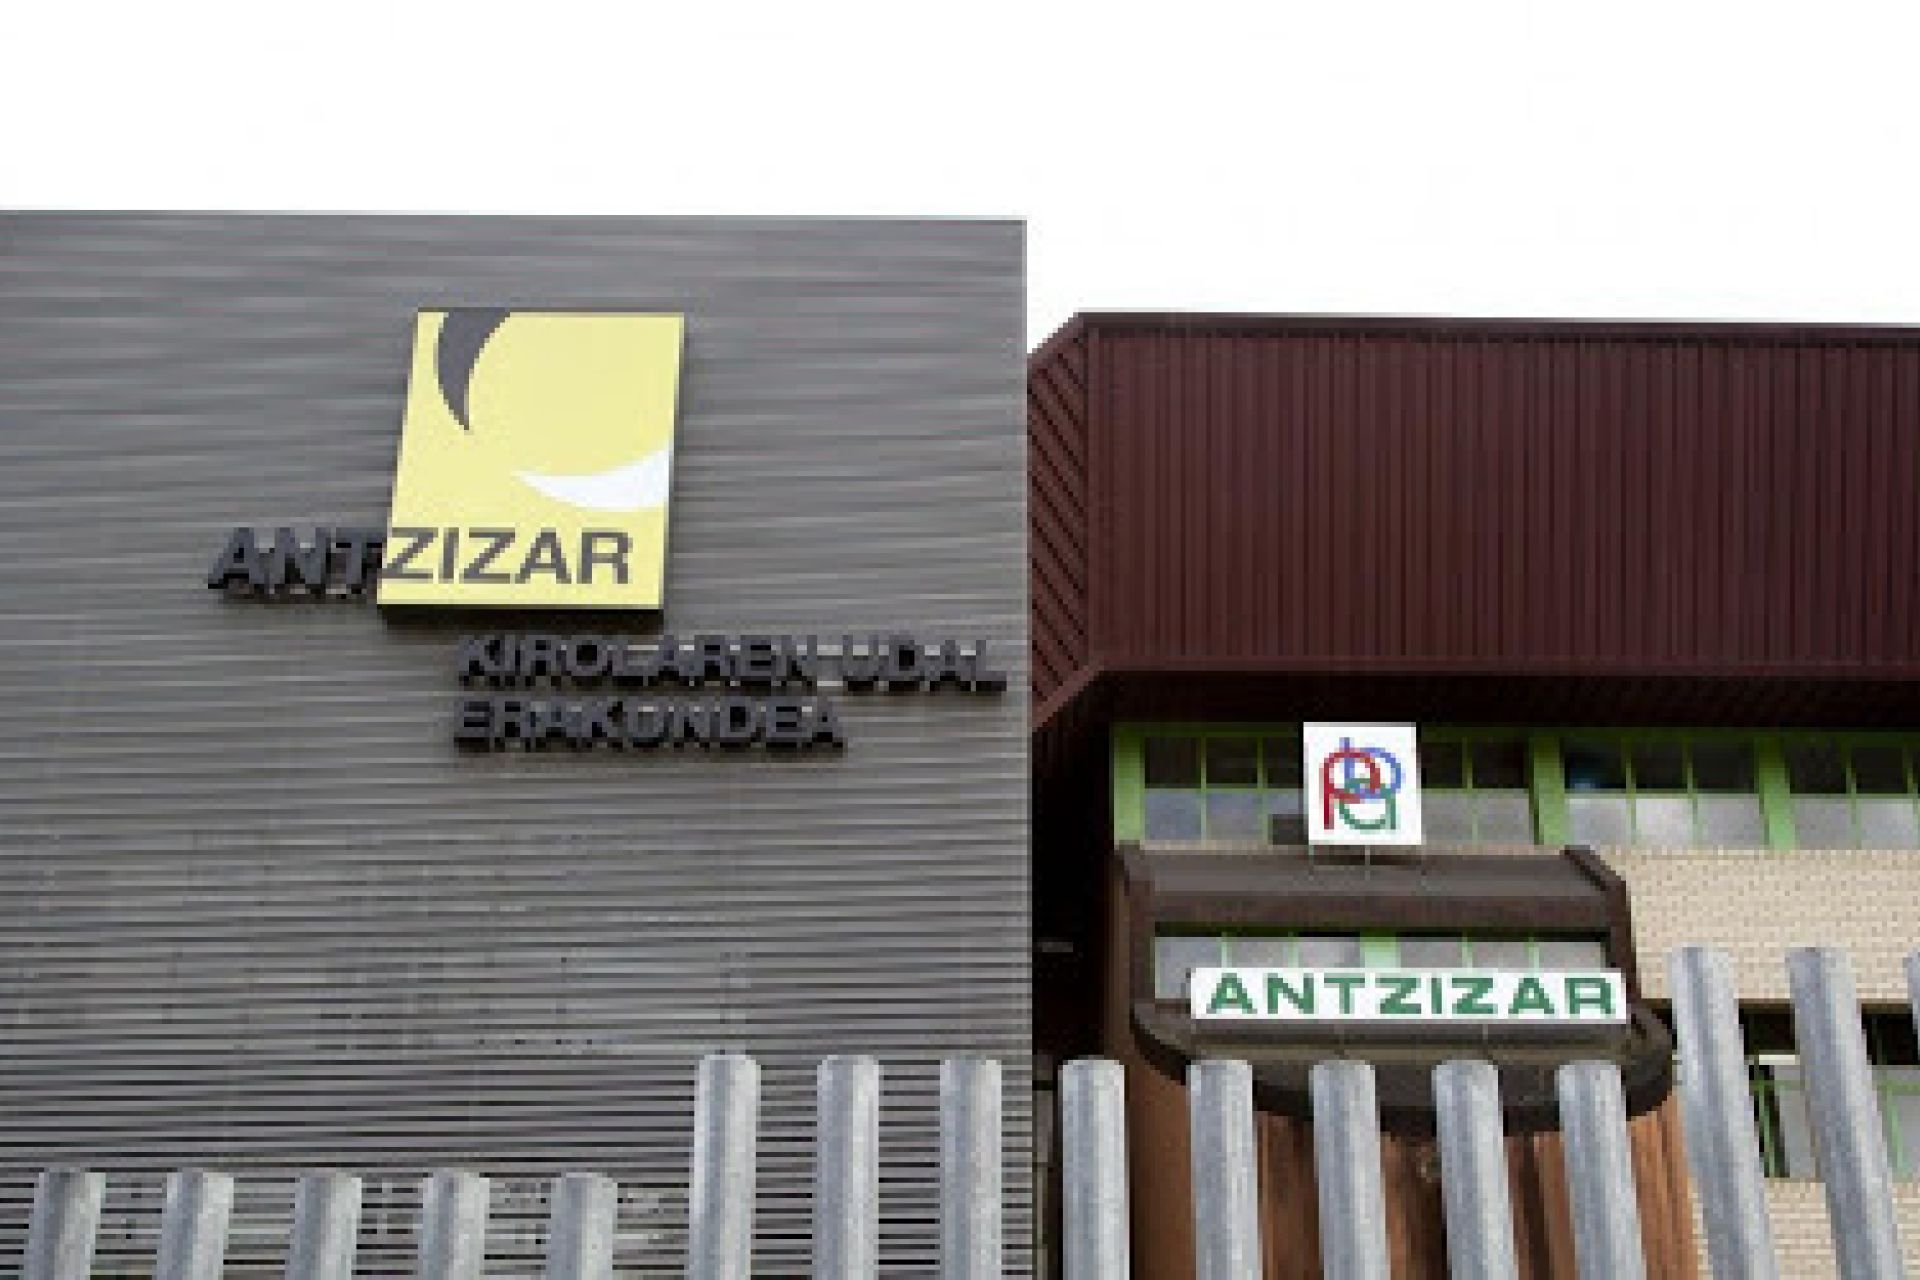 Las instalaciones del polideportivo Antzizar se abrirán el 15 de junio con condiciones especiales